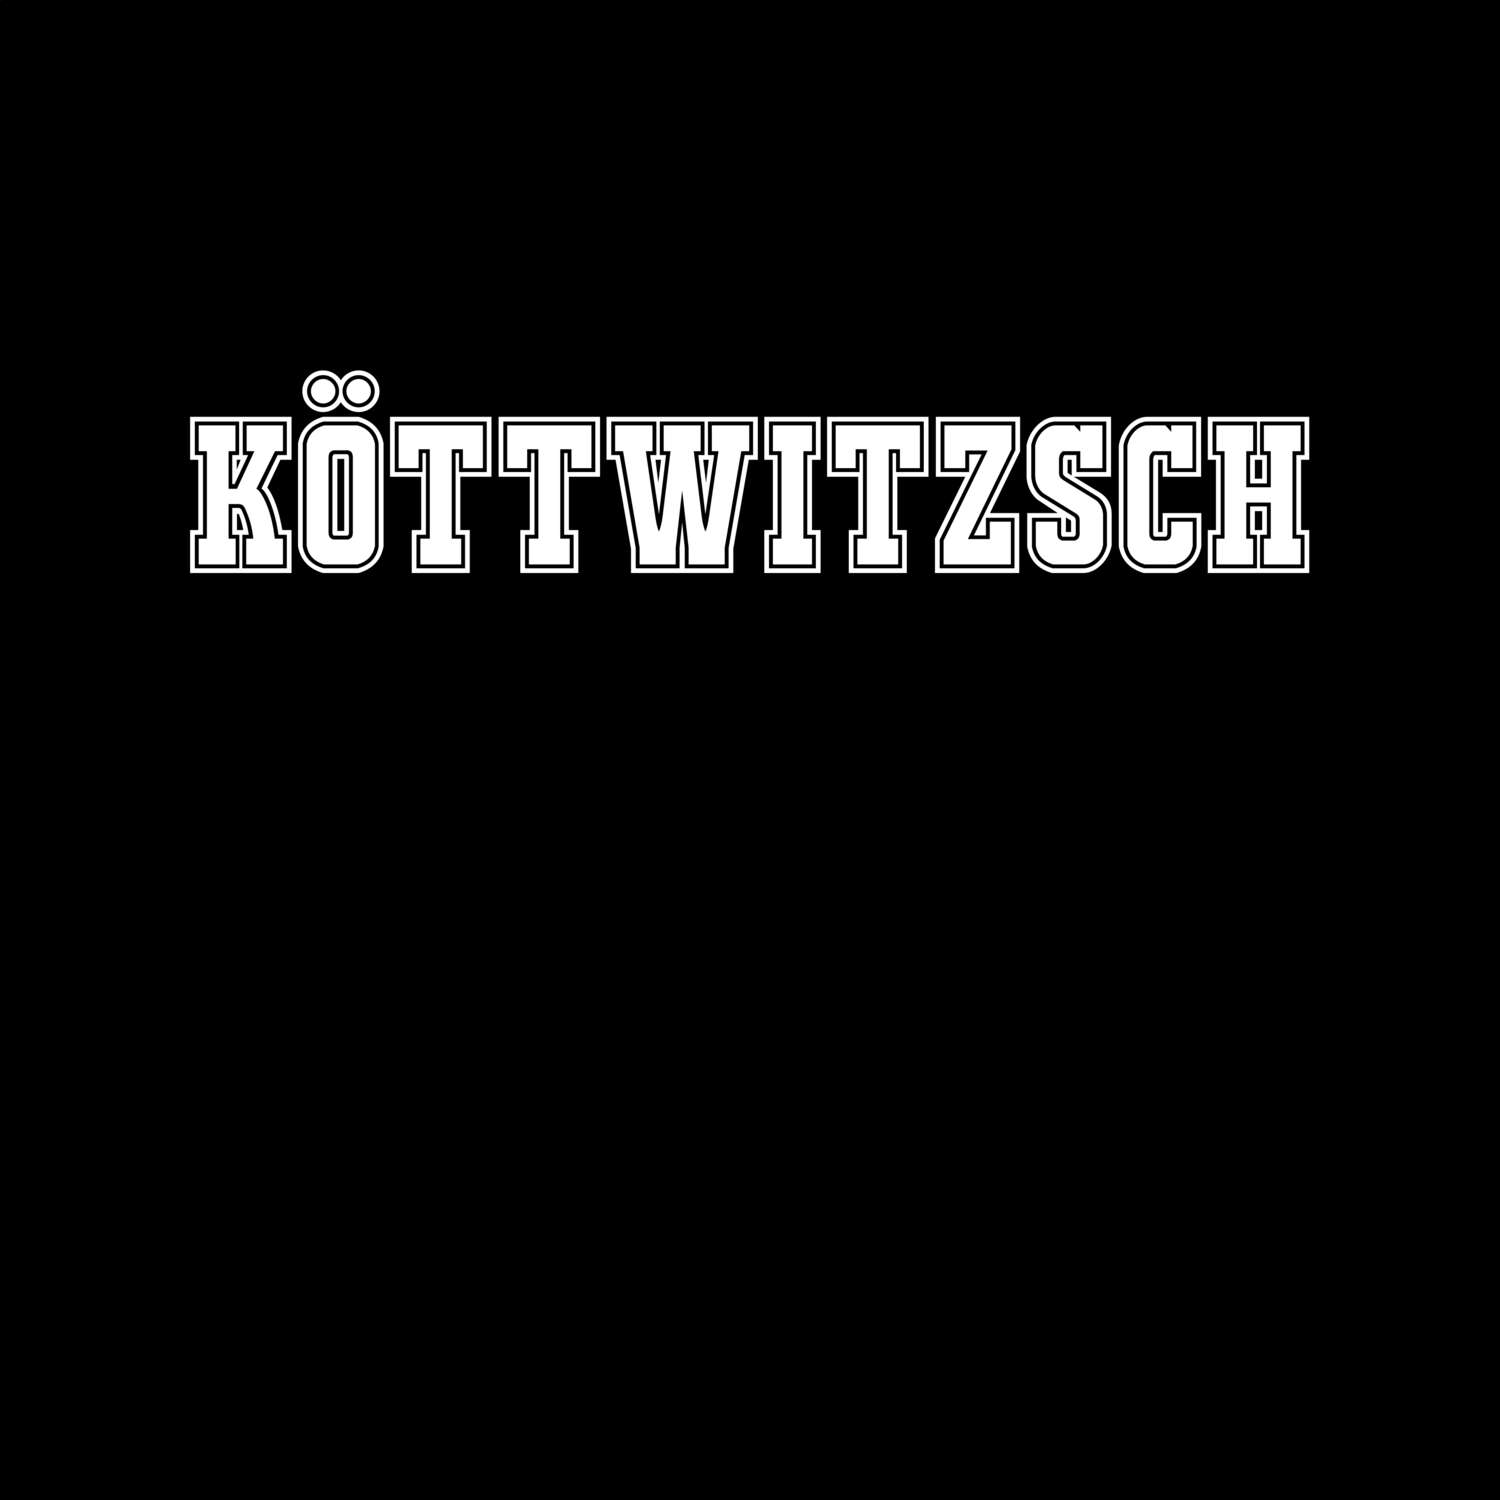 Köttwitzsch T-Shirt »Classic«